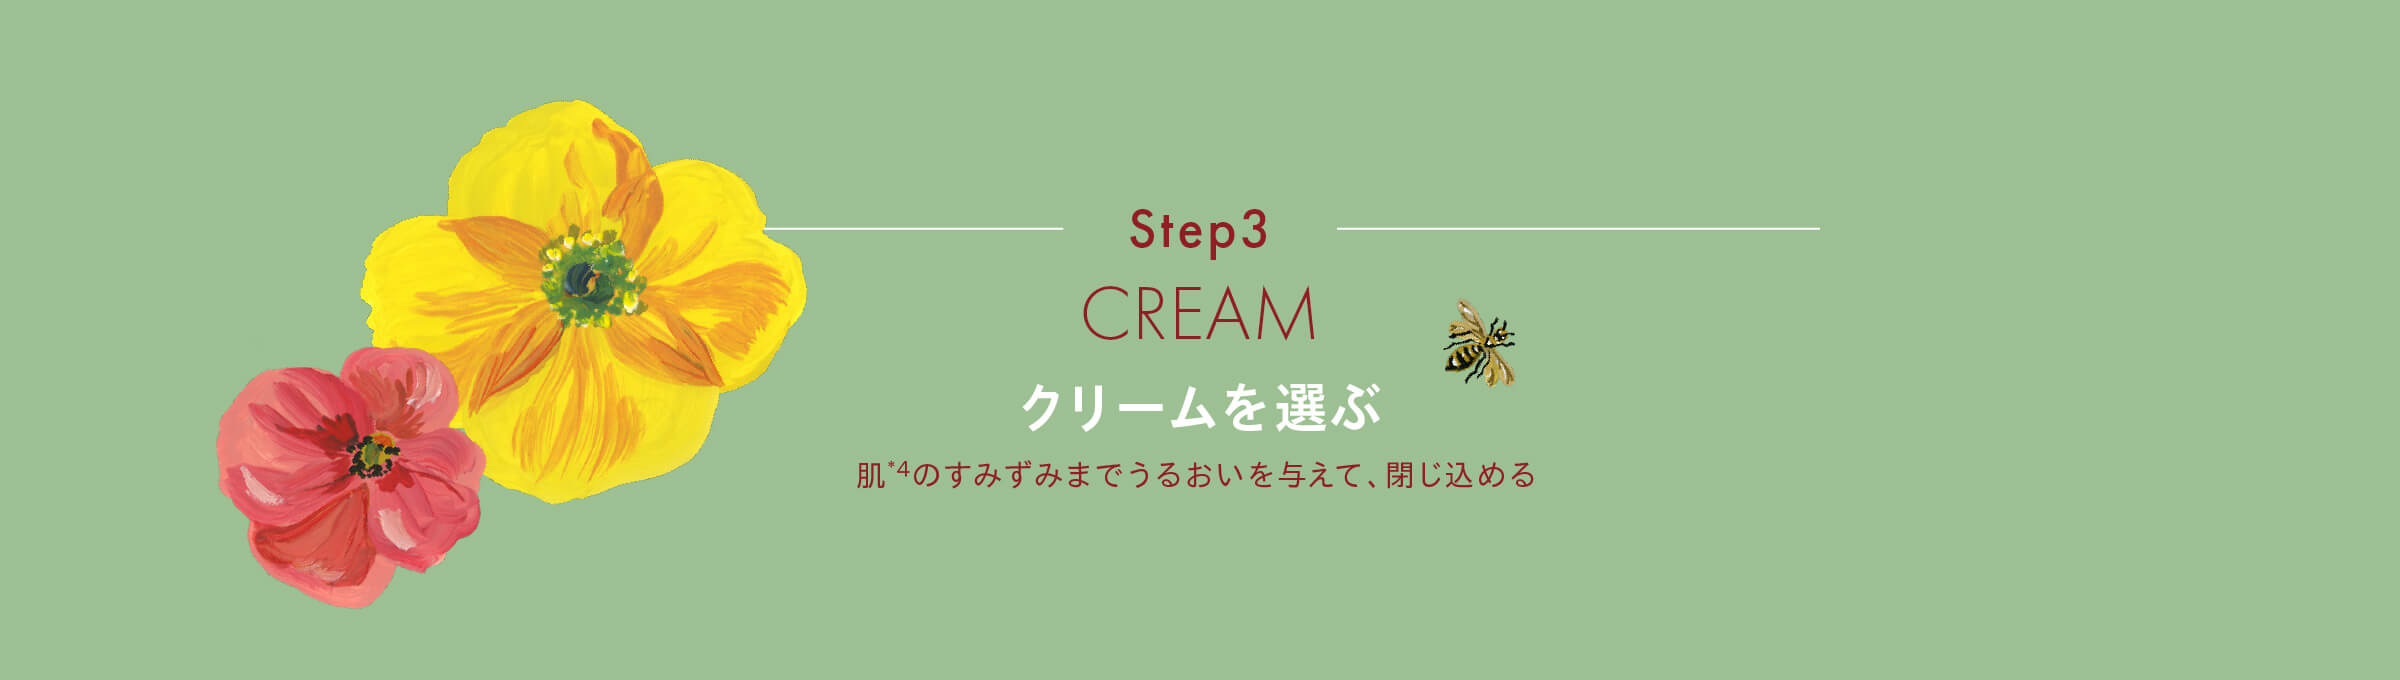 Step3 CREAM